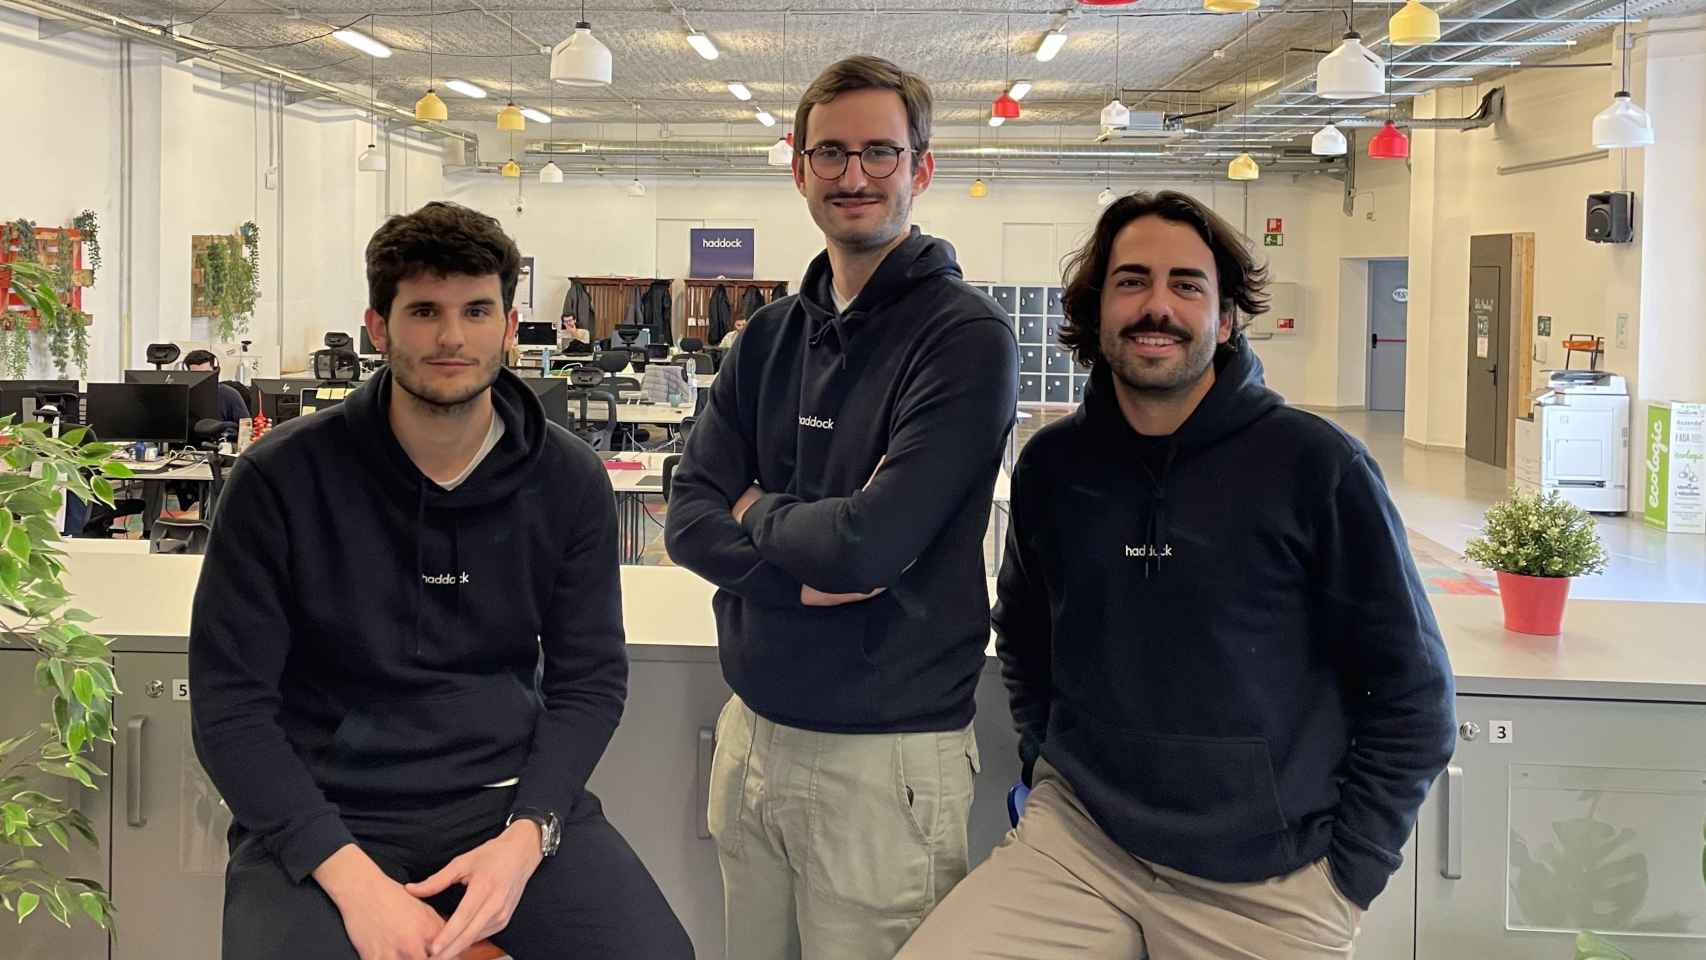 La startup con sede en Barcelona está fundada por Pol Rosell (COO), Carlos Marchal (CTO) y Arnau Navarro (CEO), y cuenta con 20 empleados.